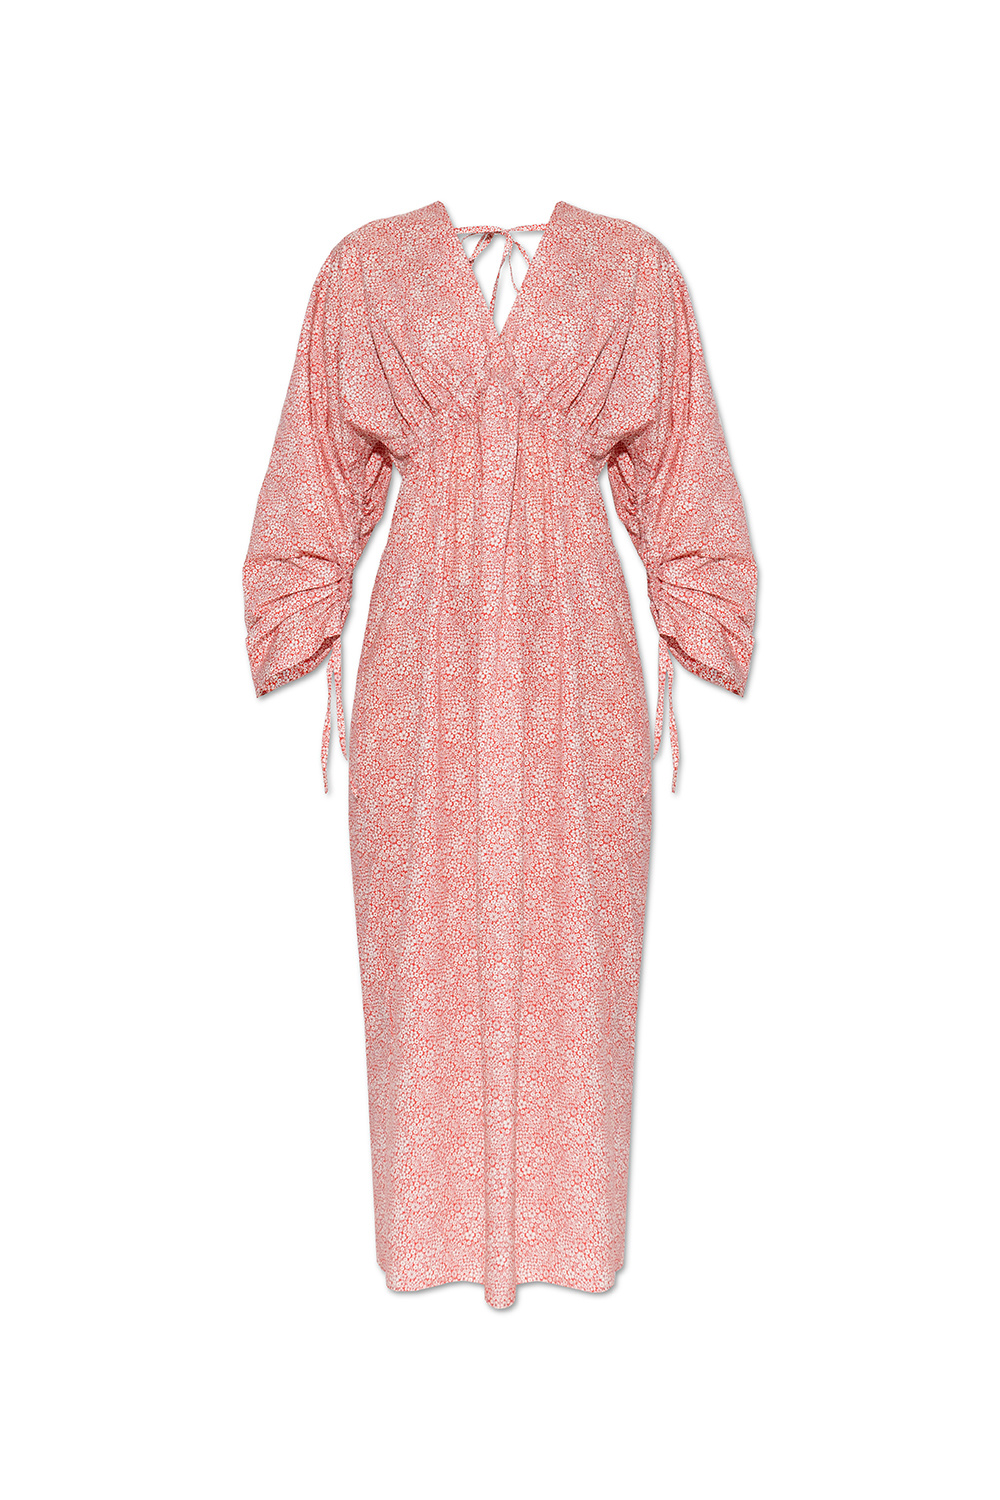 Birgitte Herskind ‘Ryan’ floral Adidas dress